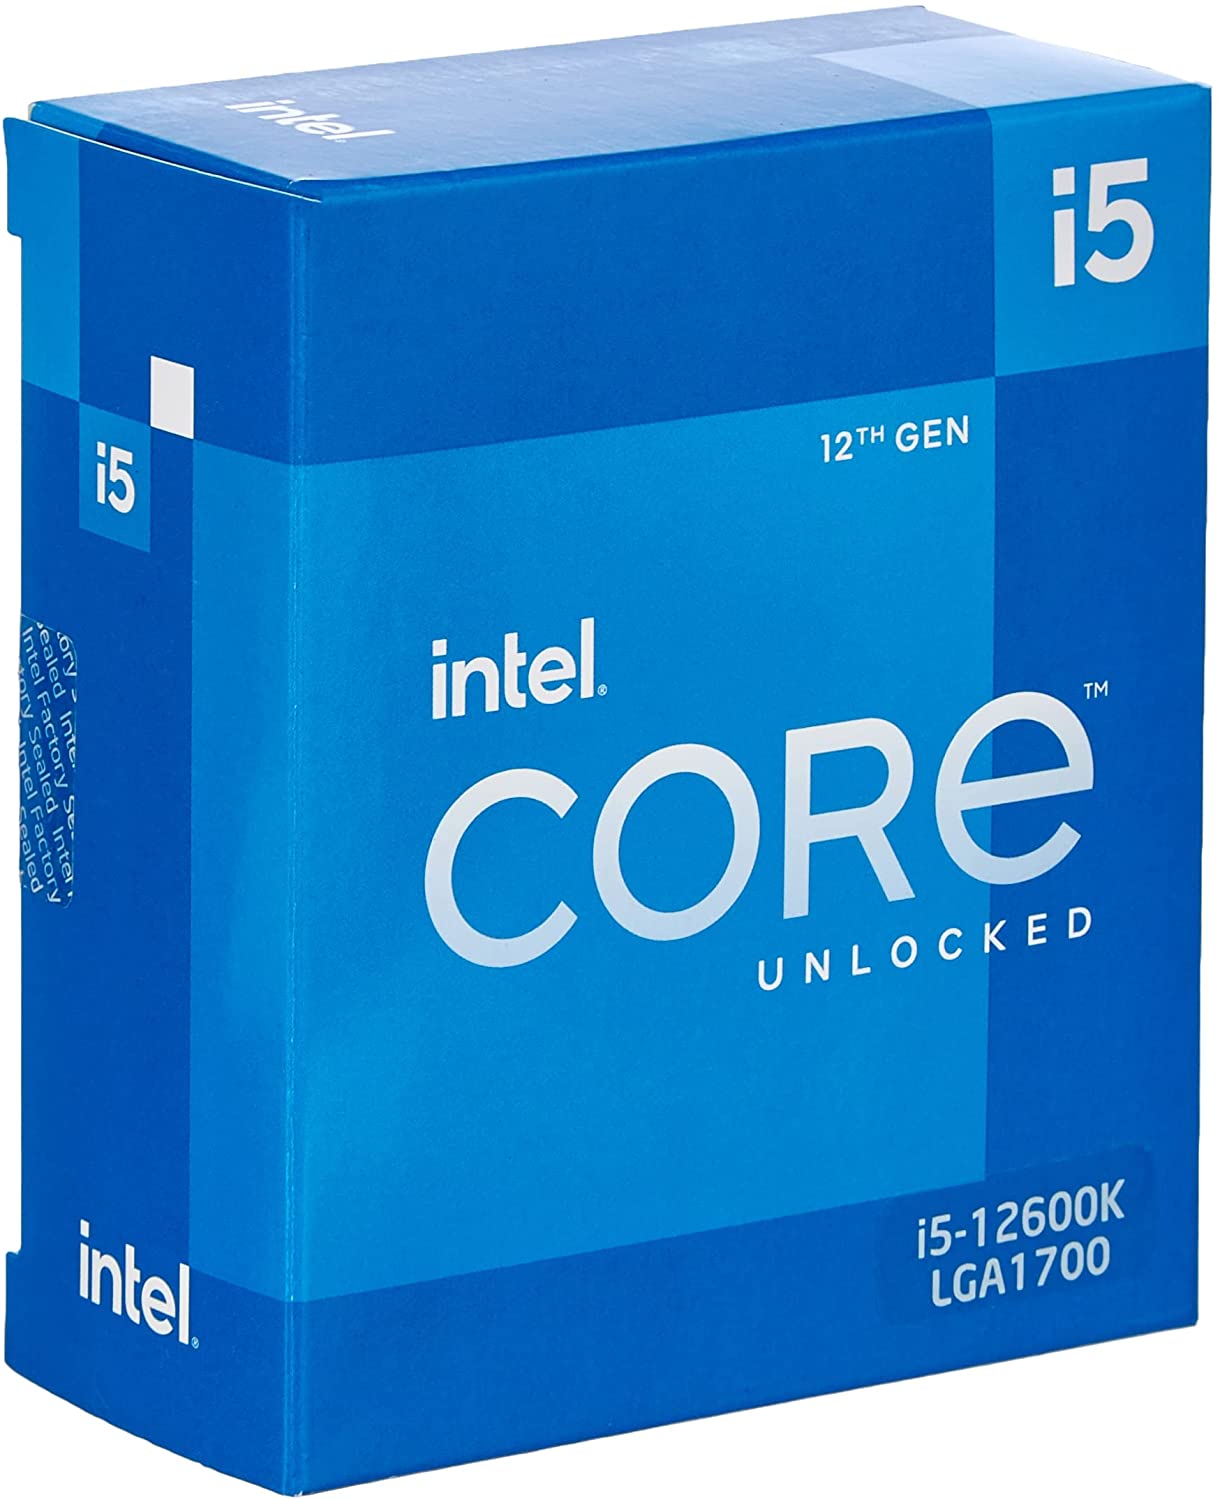 Intel Core i5-12600K - Processore desktop di 12a generazione (orologio base: 3,7 GHz Tuboboost: 4,9 GHz, 6 core, LGA1700, RAM DDR4 e DDR5 fino a 128 GB) BX8071512600K